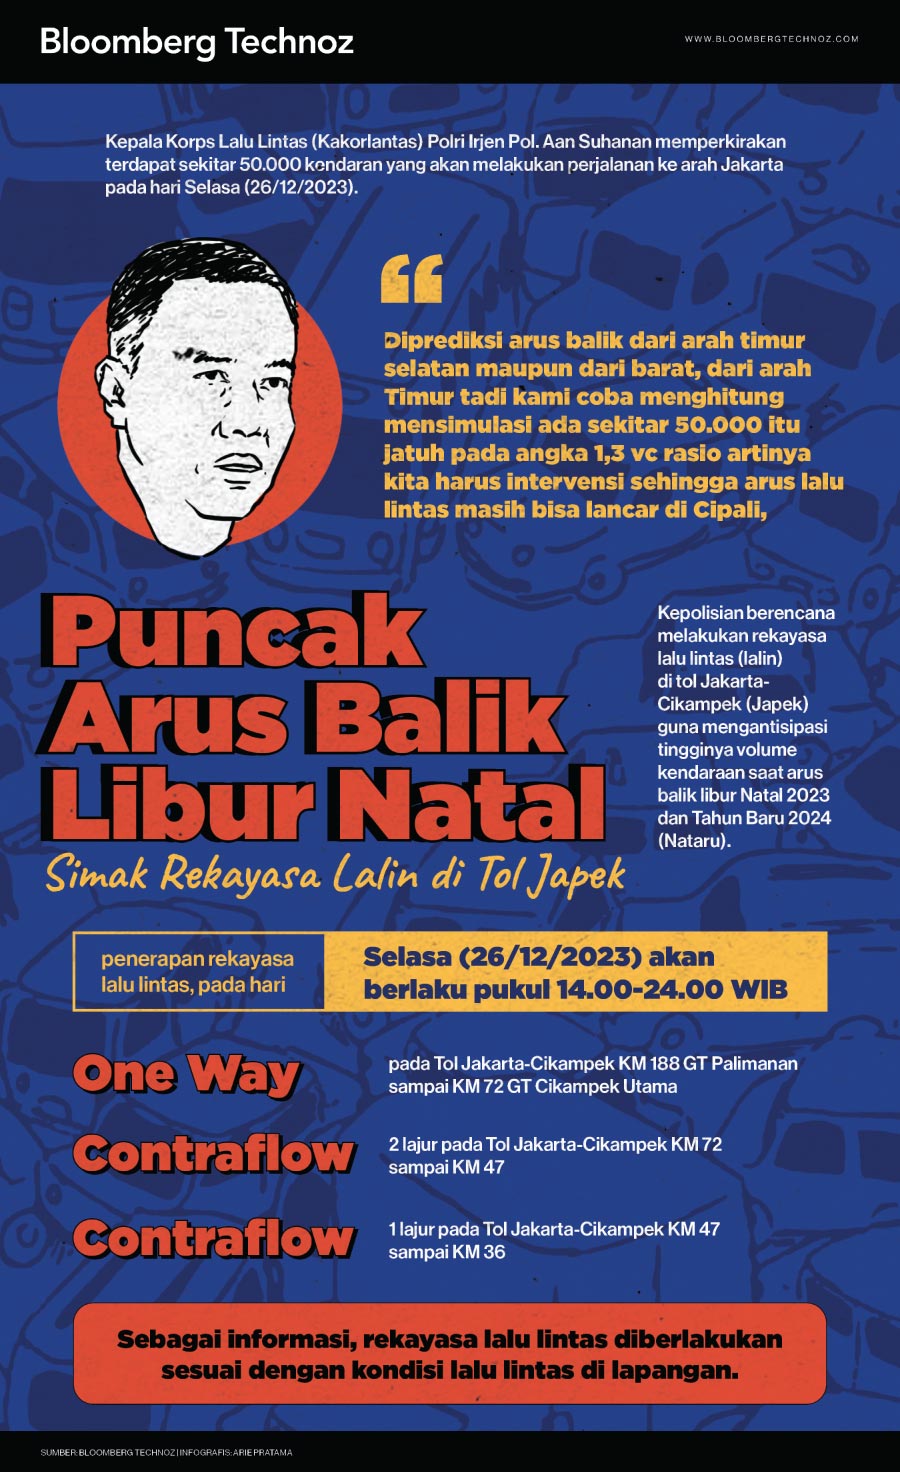 Infografis Puncak Arus Balik Libur Natal, Simak Rekayasa Lalin di Tol Japek (Arie Pratama/Bloomberg Technoz)